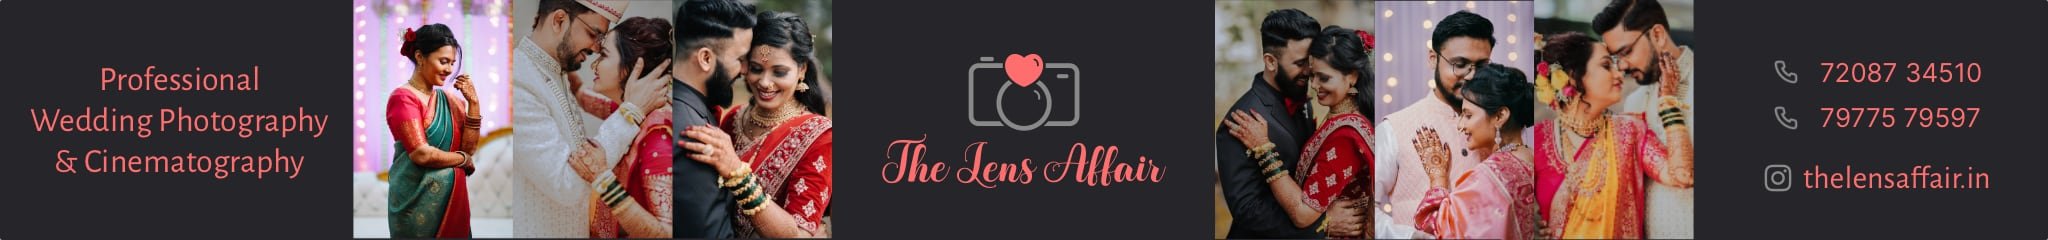 The Lens Affair Wedding Photography